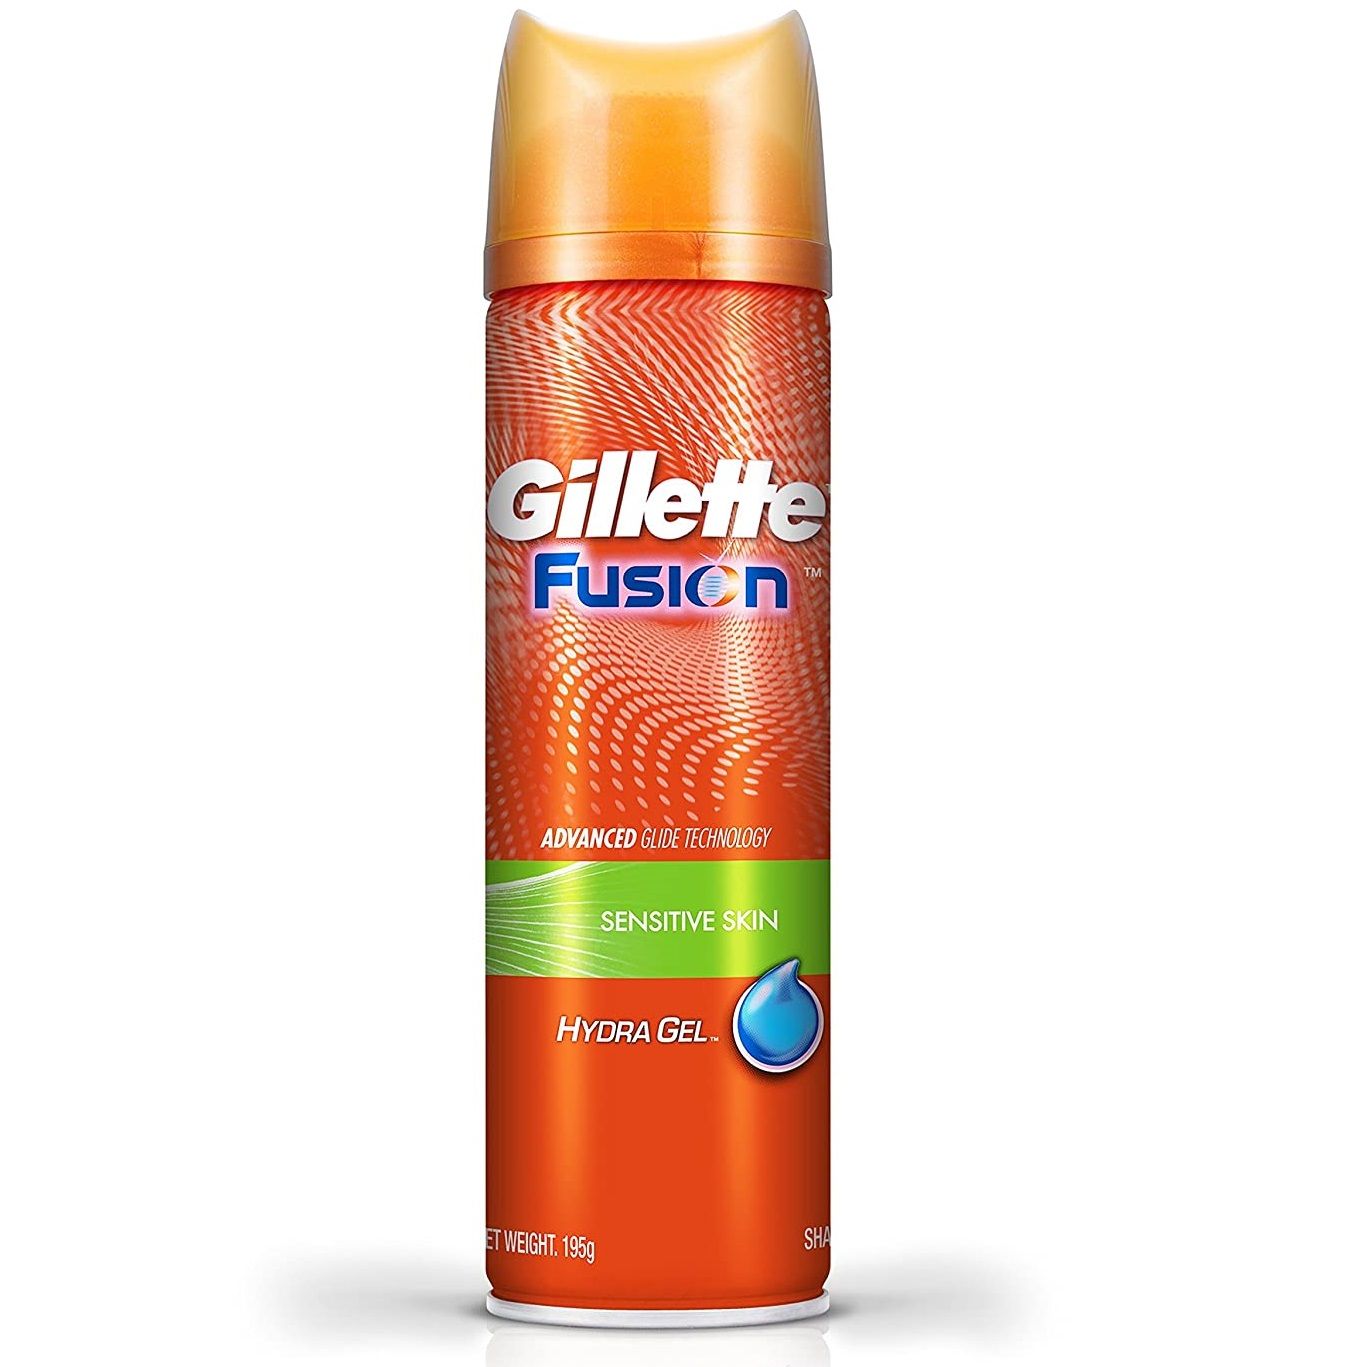 Gillette гель для бритья 200 мл fusion proglide для чувствительной кожи